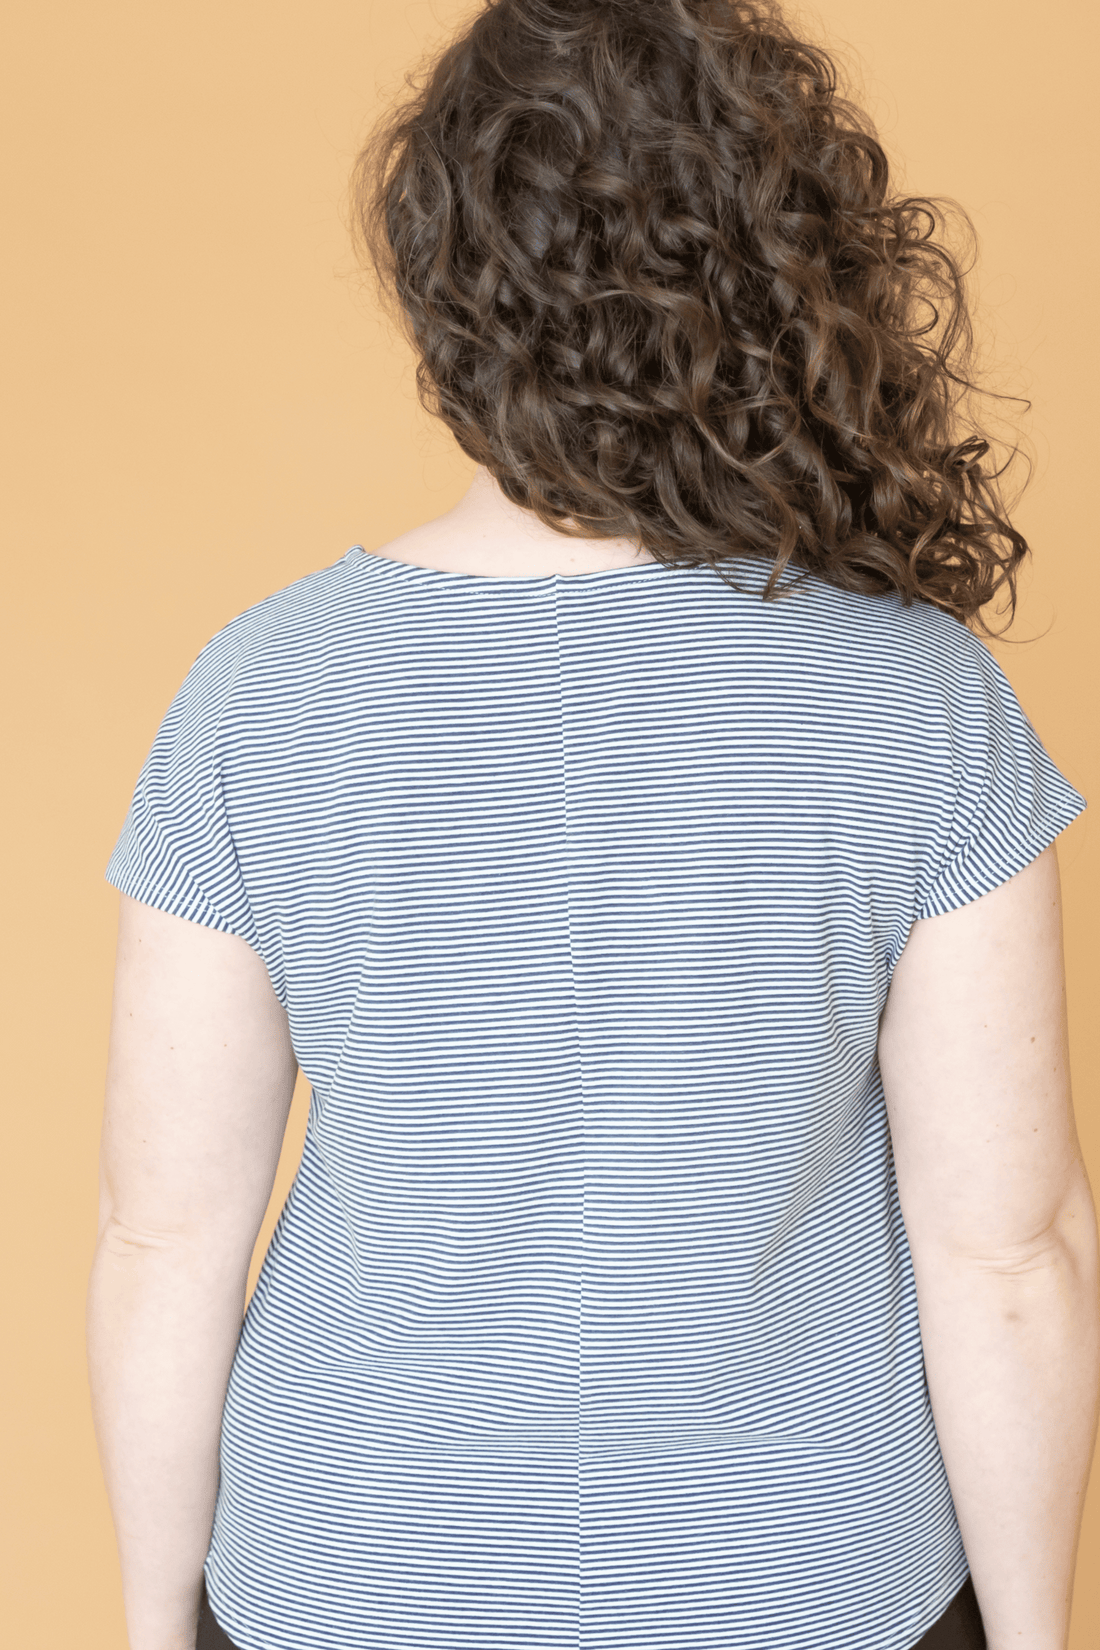 Haut t-shirt rayé gris charbon à manches courtes pour femmes fabriqué au Québec, Canada.